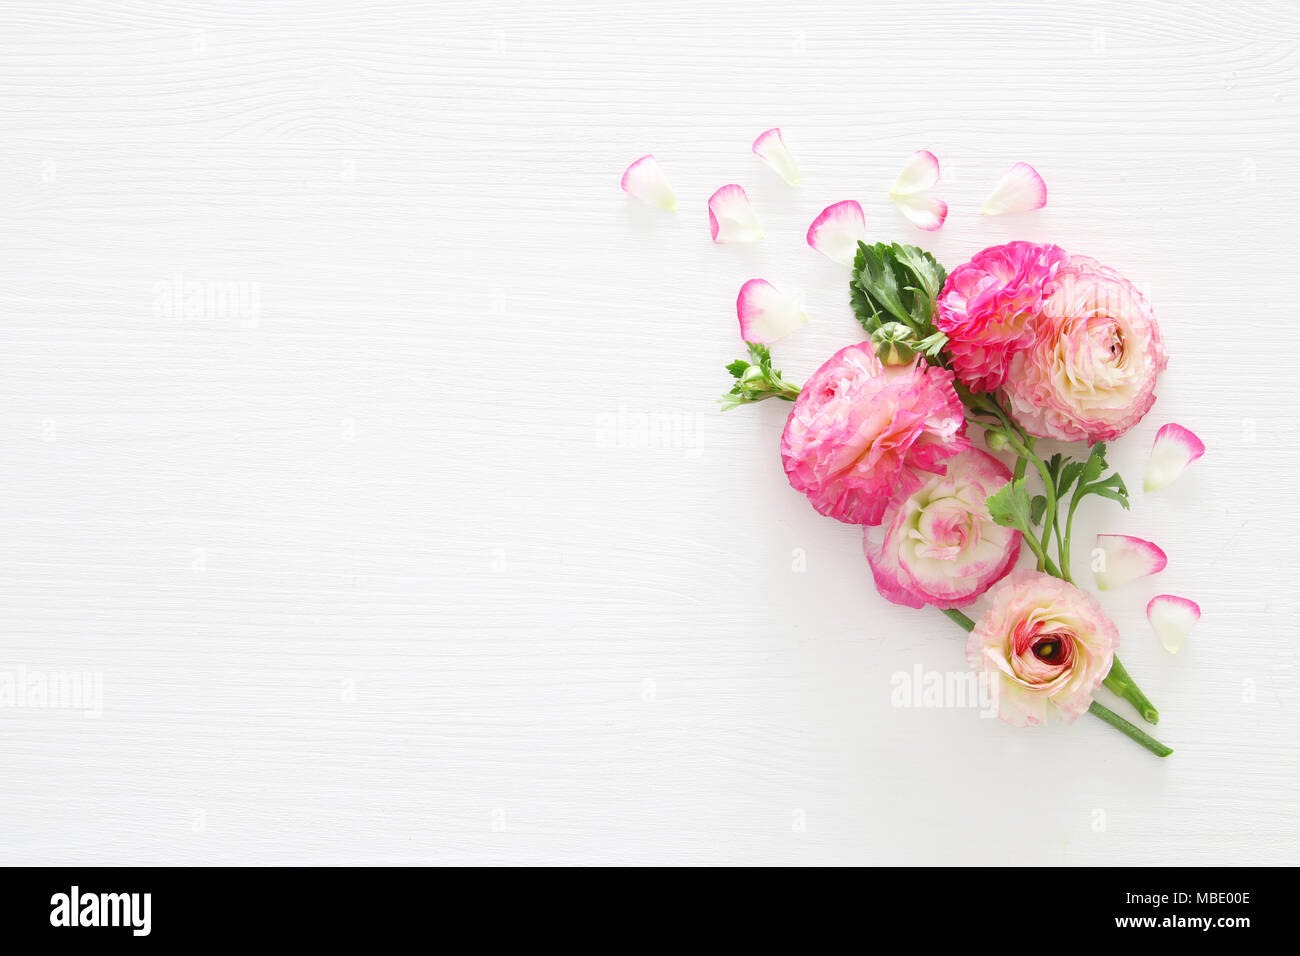 Image de belles fleurs rose pastel délicates sur fond de bois blanc arrangement. Mise à plat, vue du dessus Banque D'Images